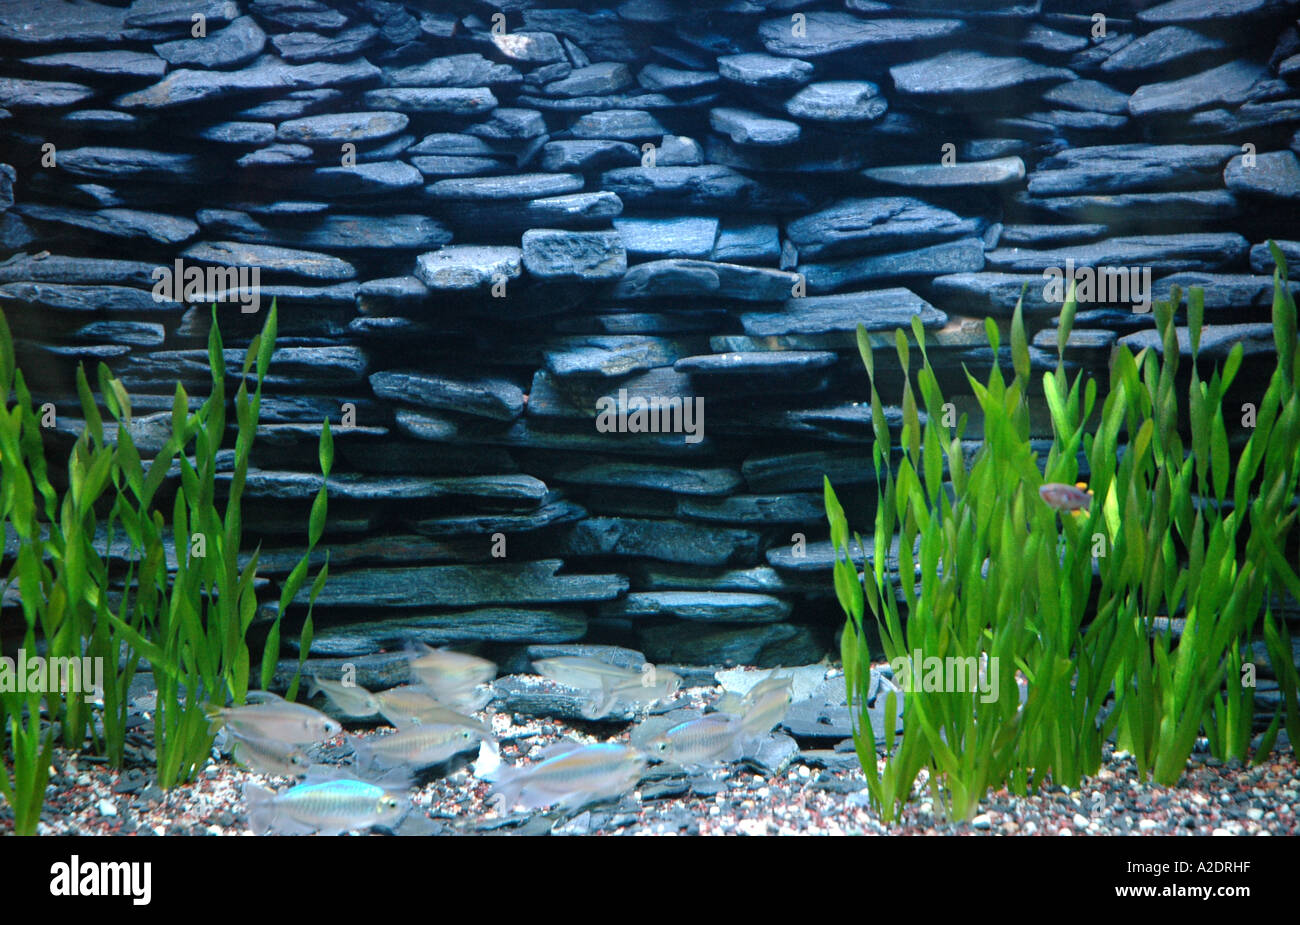 Phenacogrammus interruptus Congo tetra fish in aquarium Stock Photo